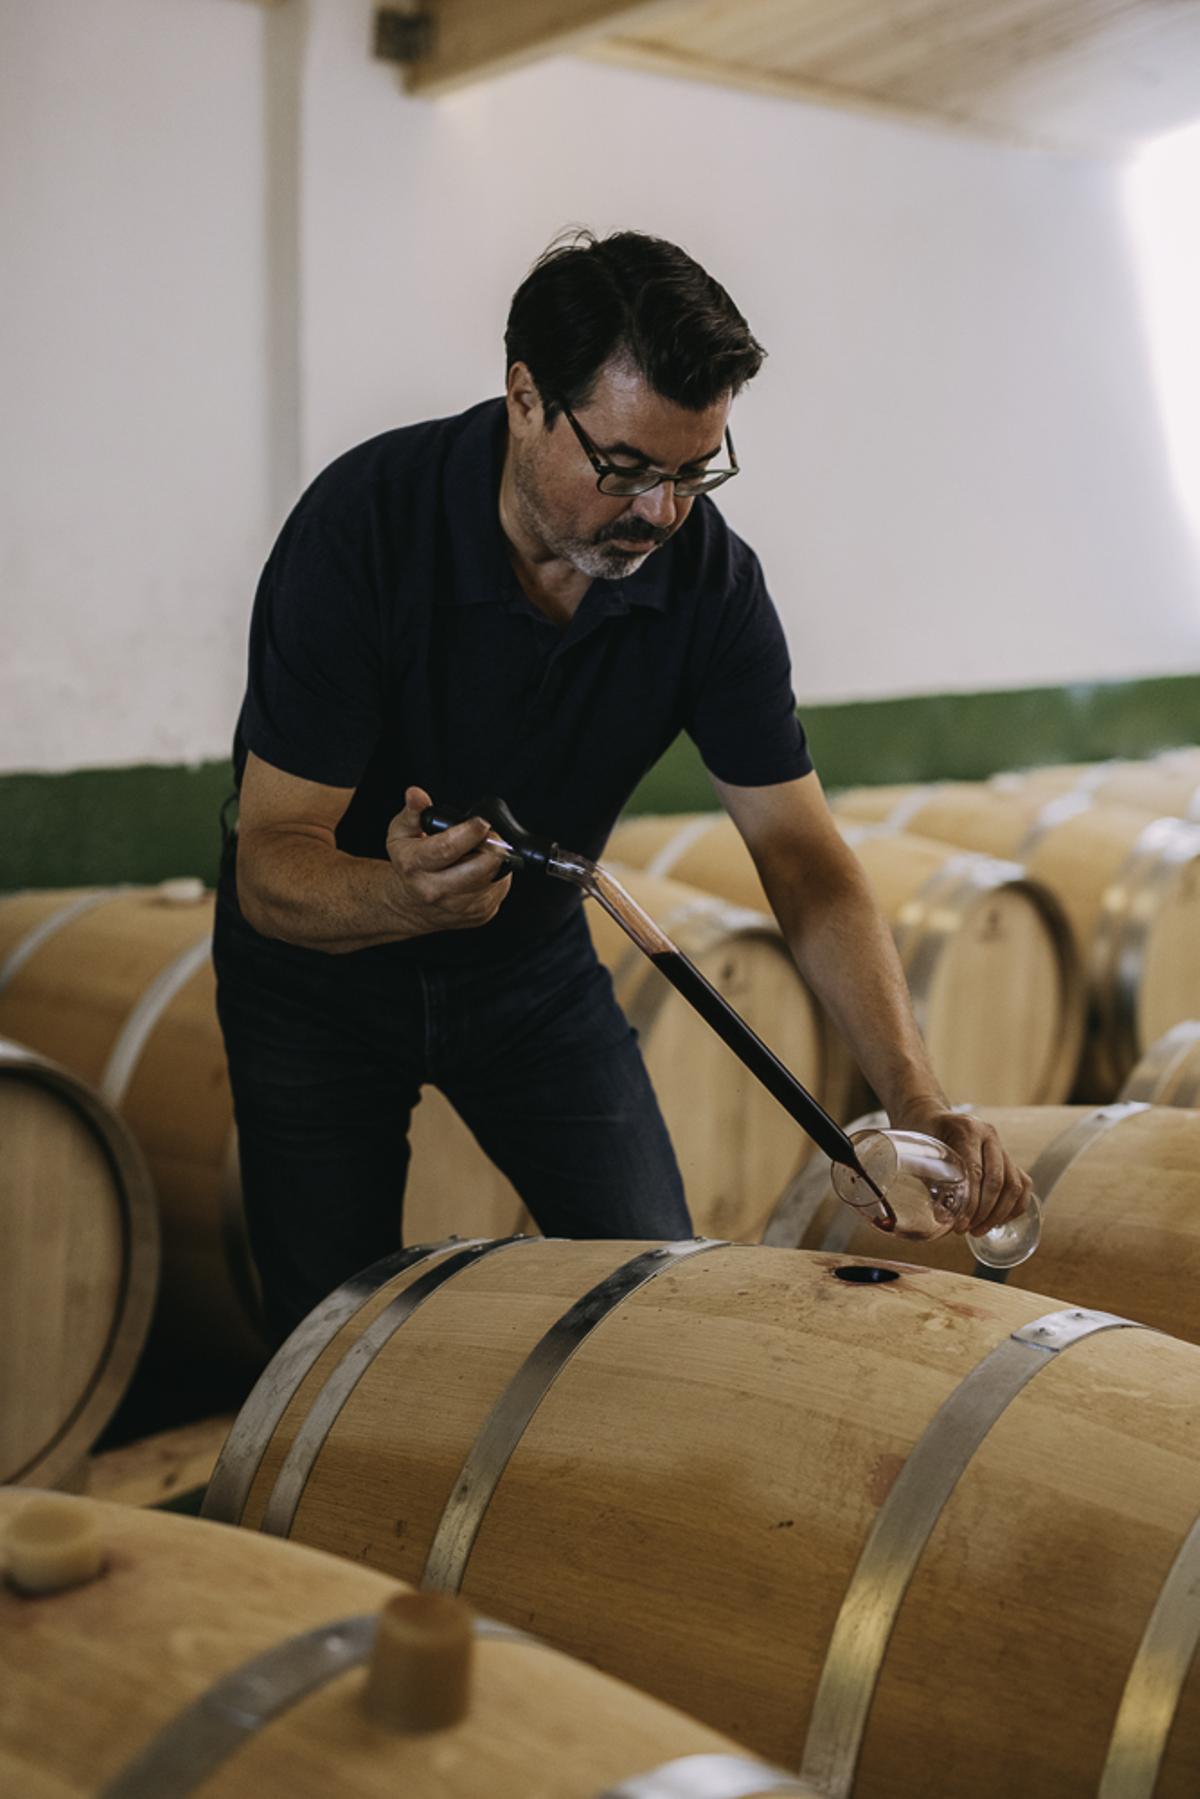 La viticultura de Bodega Vegalfaro se basa en prácticas naturales y tradicionales. Caprasia Bobal Ánfora 2021 es uno de sus vinos.